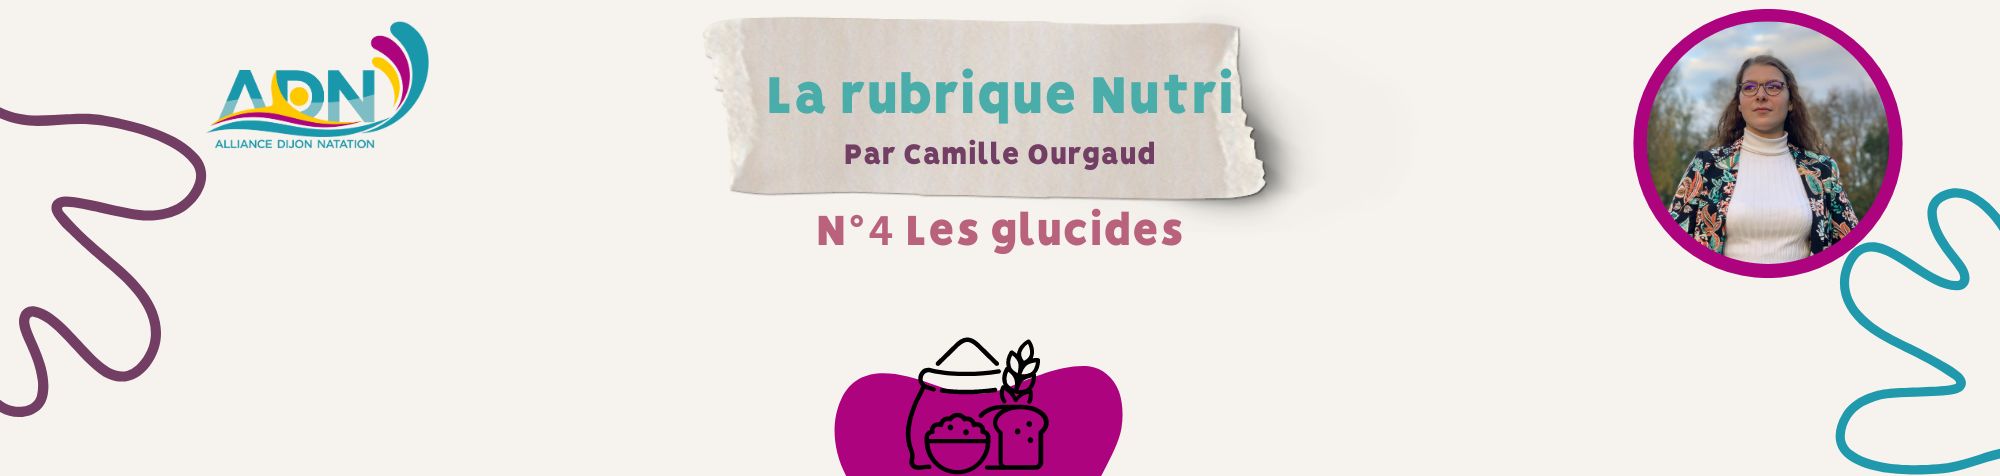 Rubrique nutri site (3)